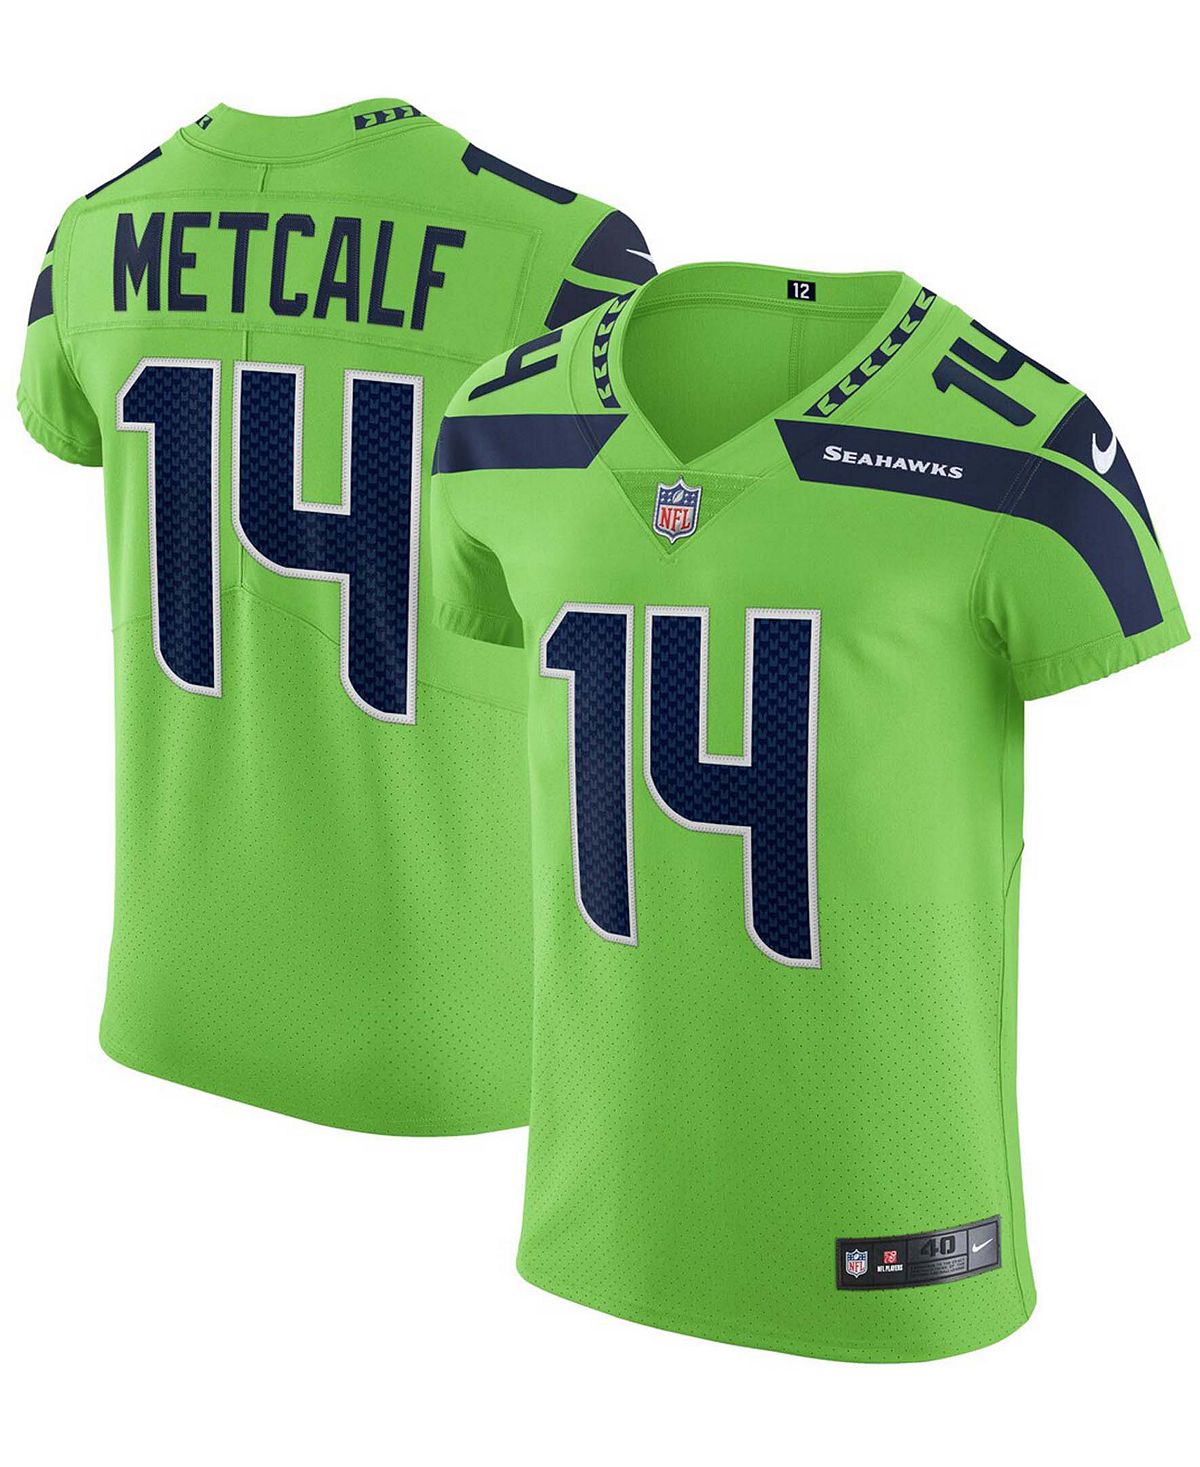 цена Мужская футболка dk metcalf neon green seattle seahawks alternate vapor elite player Nike, мульти